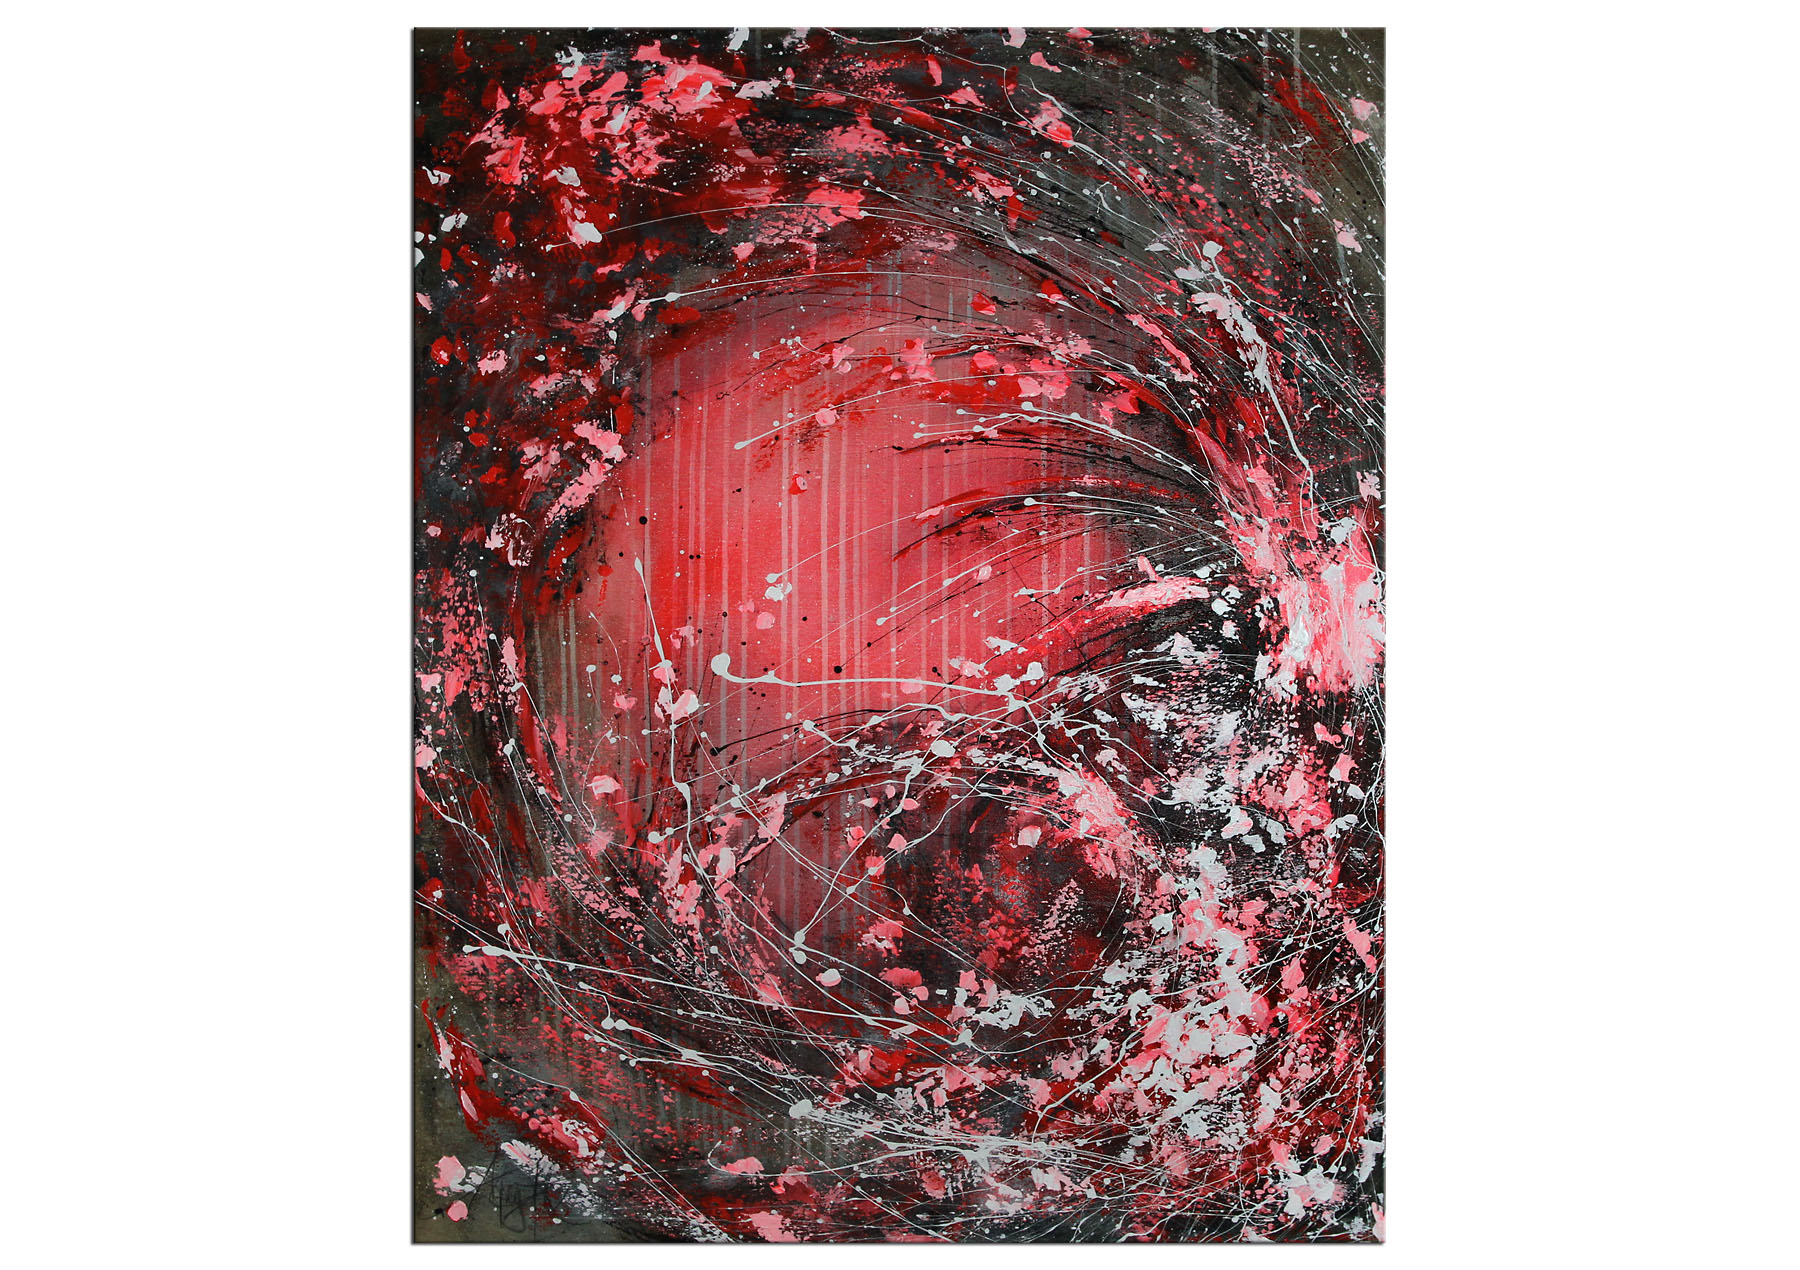 Acrylbild von A. Freymuth: "Red Dynamic"